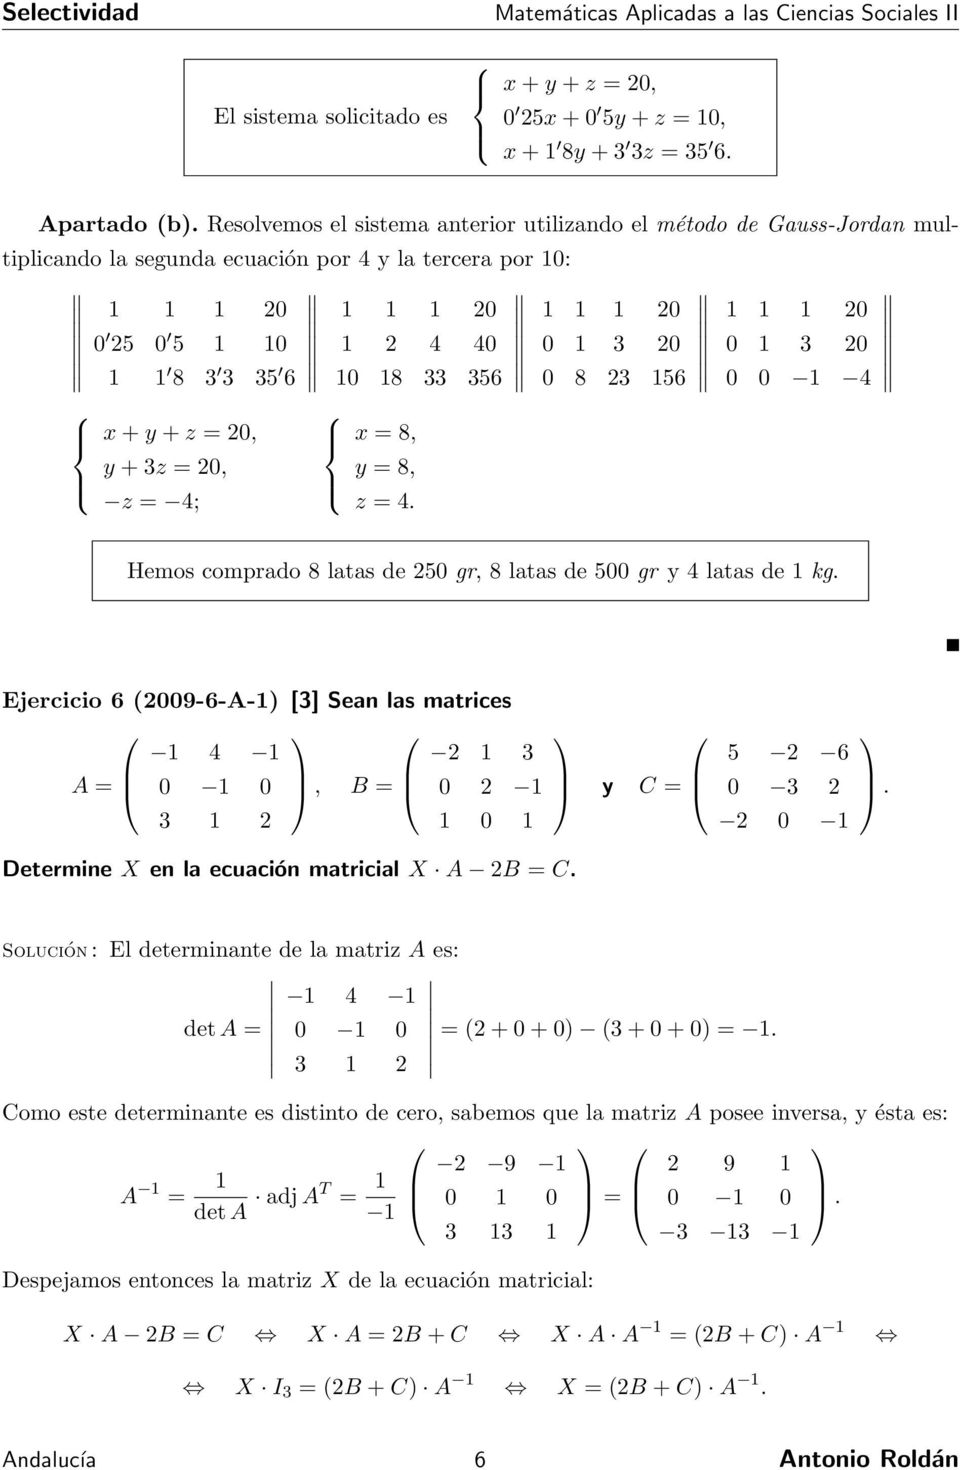 Ejercicio 6 009-6-A- [3] Sean las matrices 4 3 A 0 0, B 0 3 0 Determine X en la ecuación matricial X A B C y C 5 6 0 3 0 Solución : El determinante de la matriz A es: 4 det A 0 0 + 0 + 0 3 + 0 + 0 3